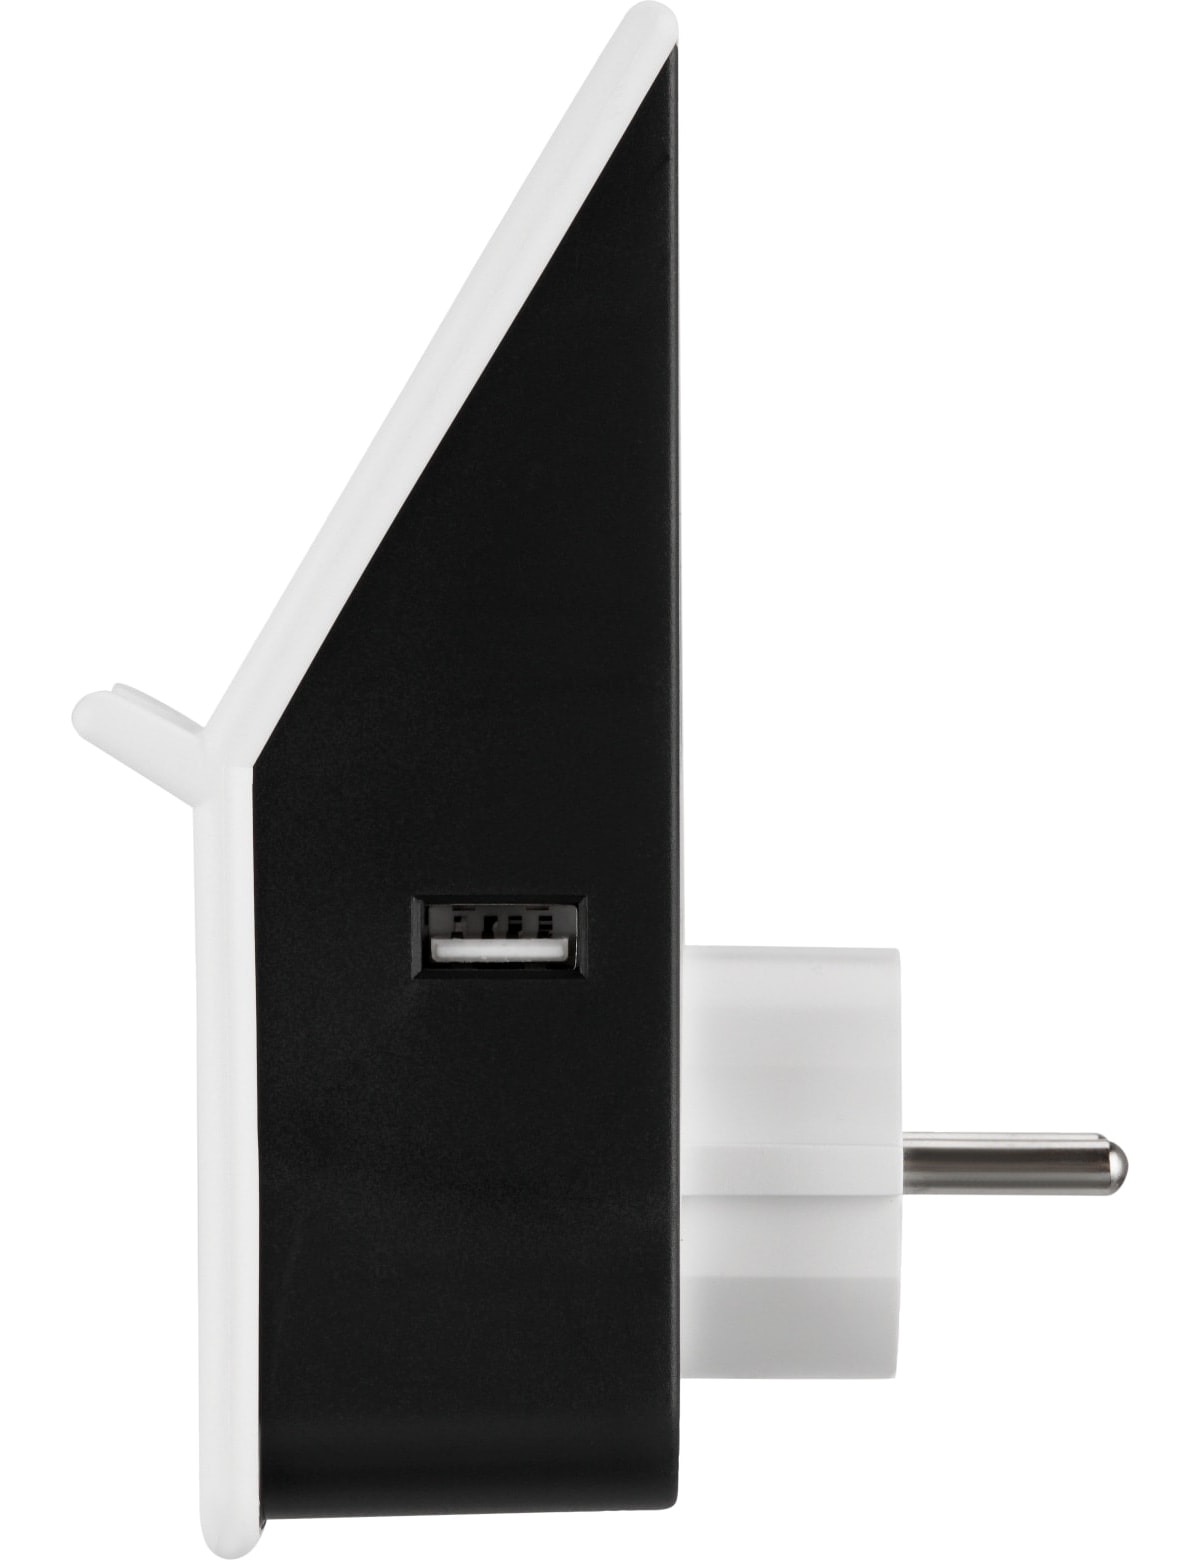 REV USB- und Induktions-Ladegerät, weiß/schwarz